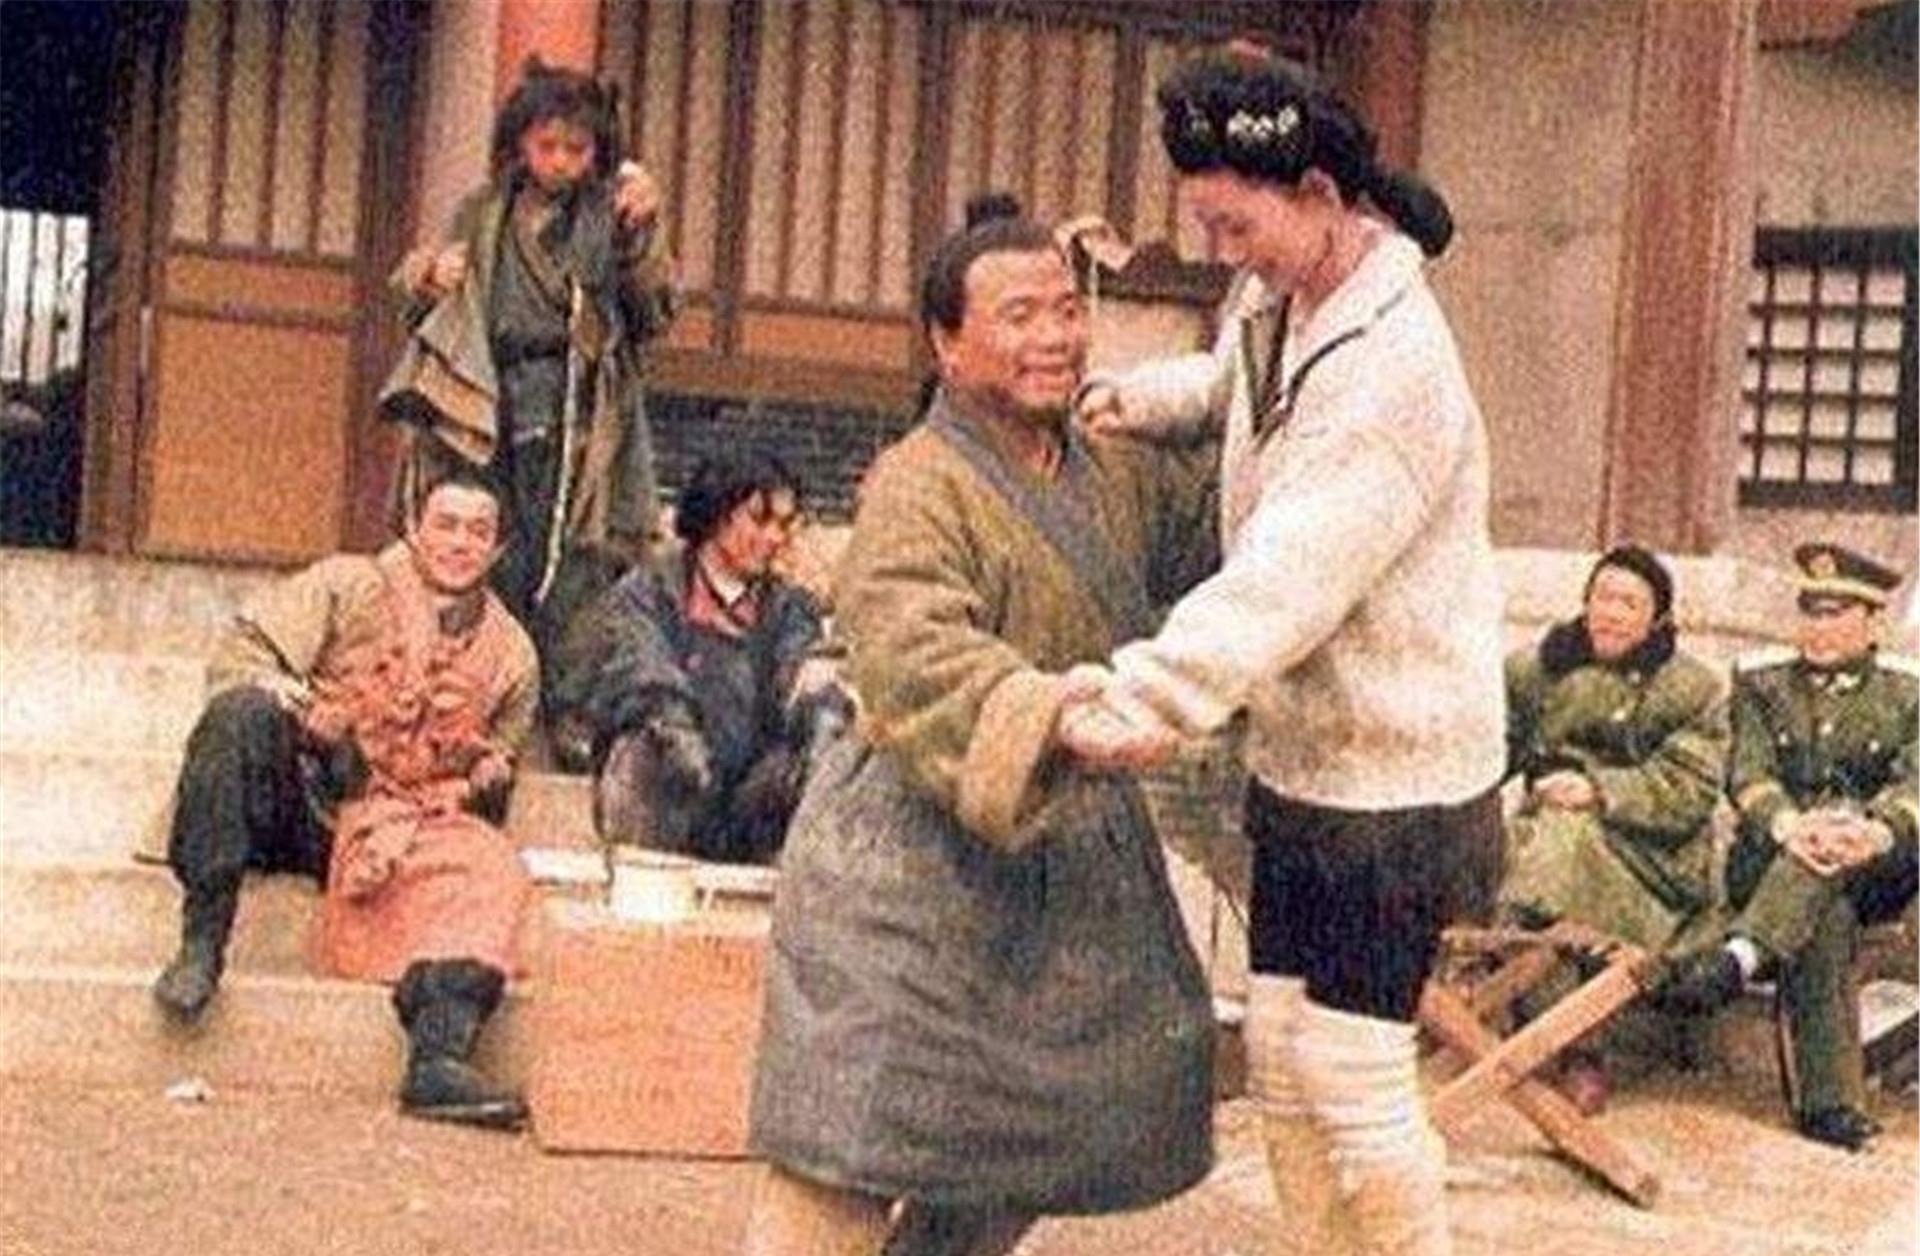 96版《水浒传》:武大郎妻子1米7,戏外潘金莲和武松成一对